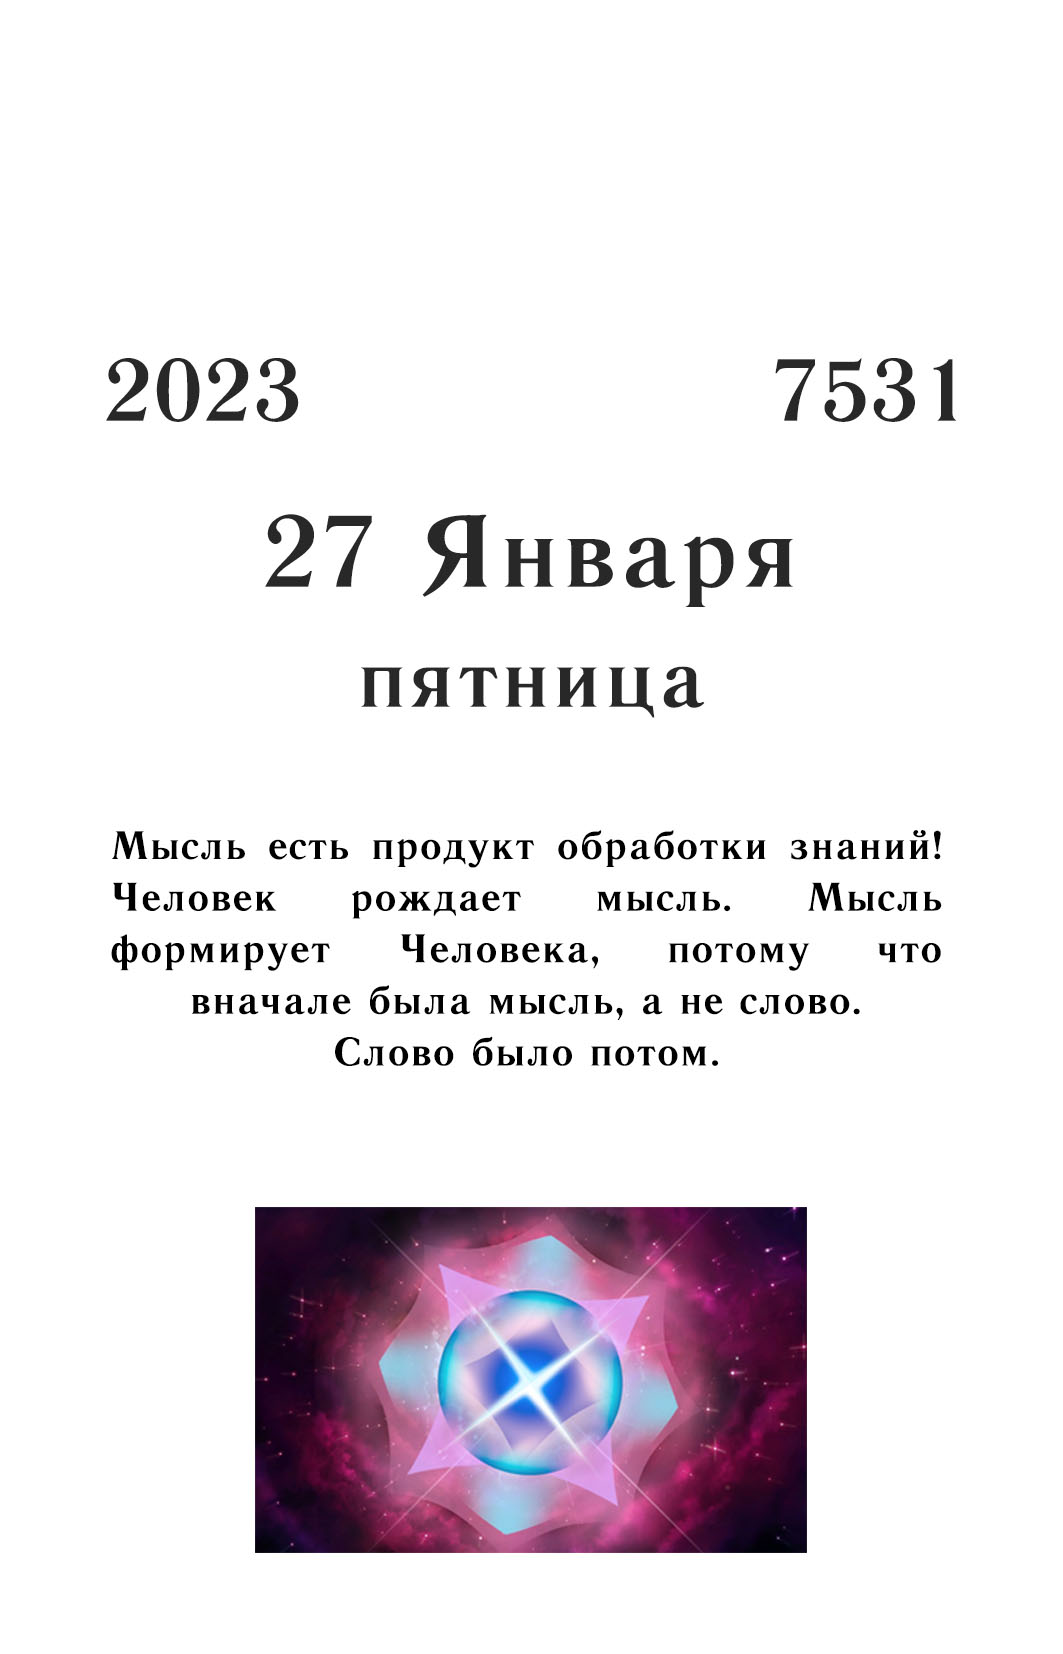 2023 01 27